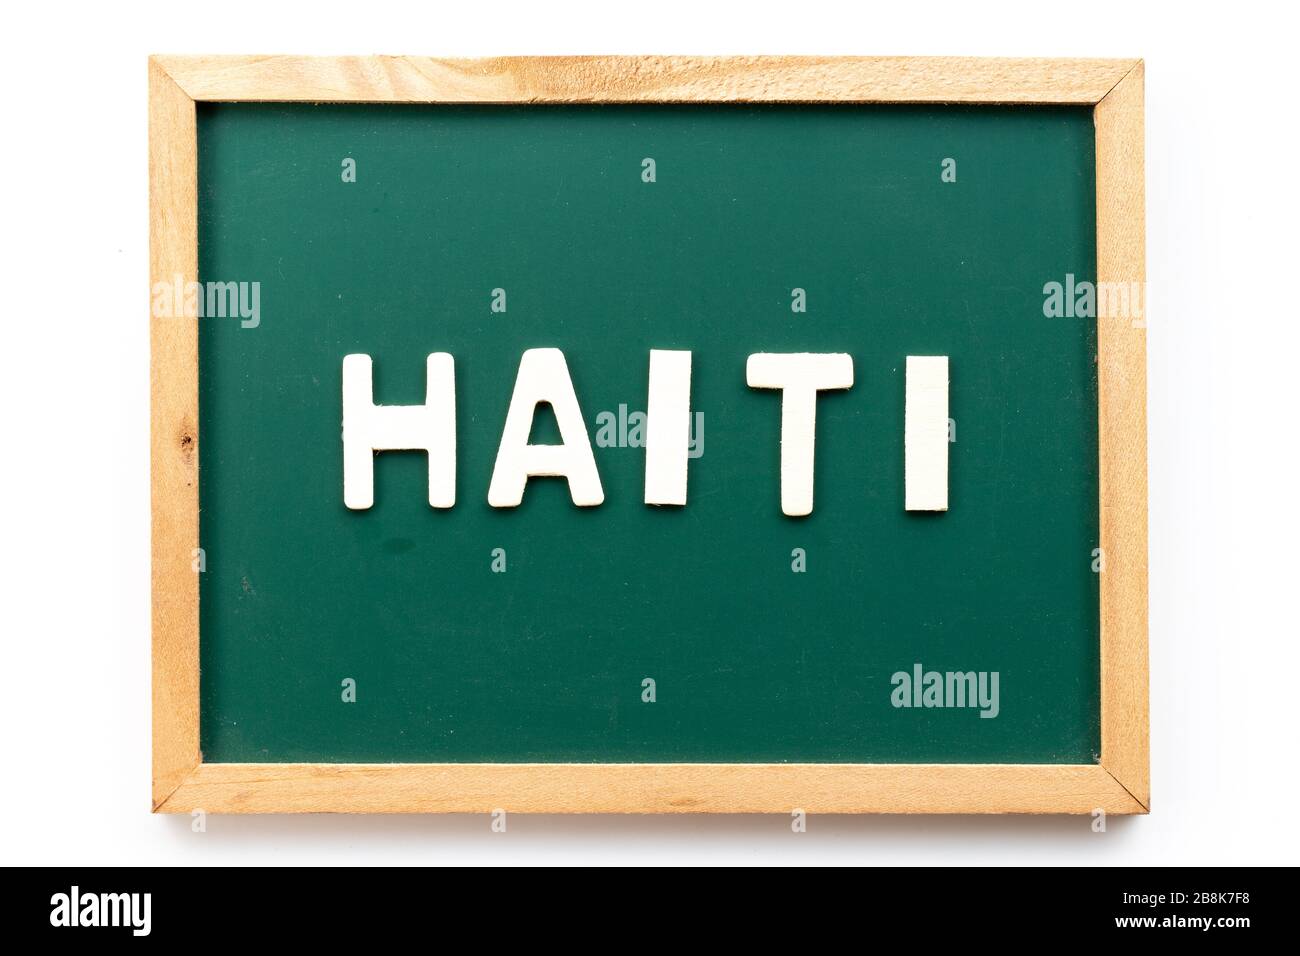 Lettre en mot Haïti sur fond noir en blanc Banque D'Images